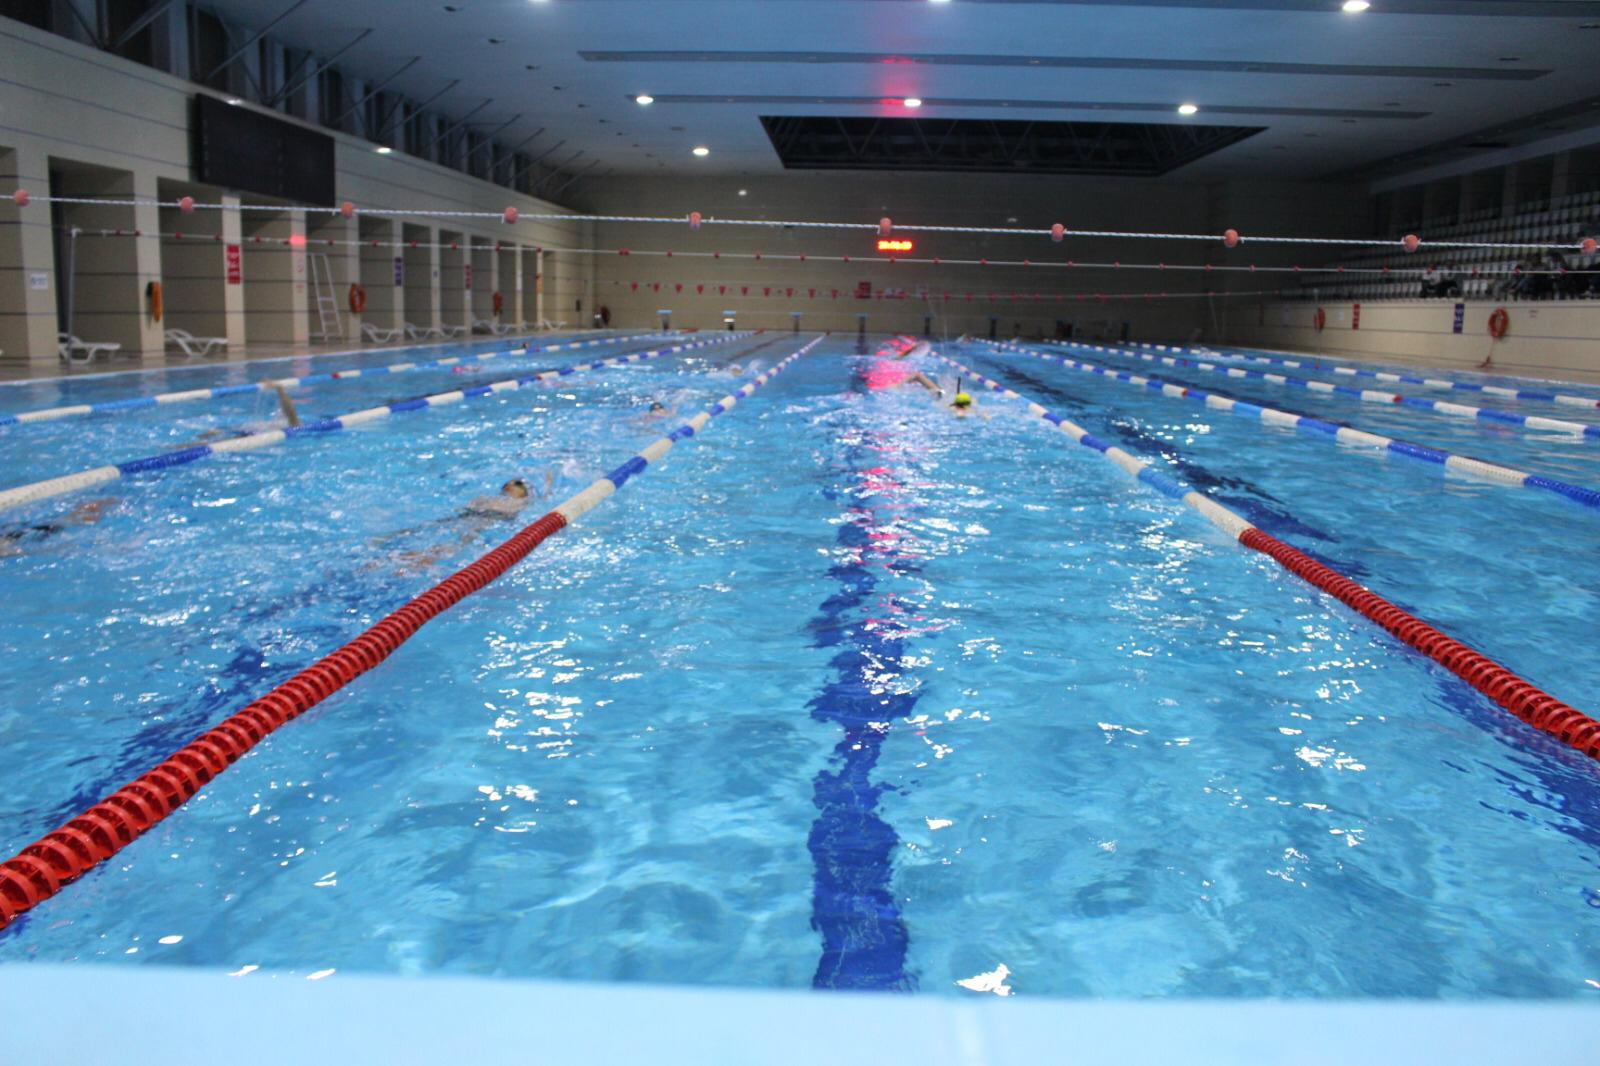 Tobb Üniversitesi Olimpik Yüzme Havuzu Yüzme Okulu Kayıtlarımız başlıyor